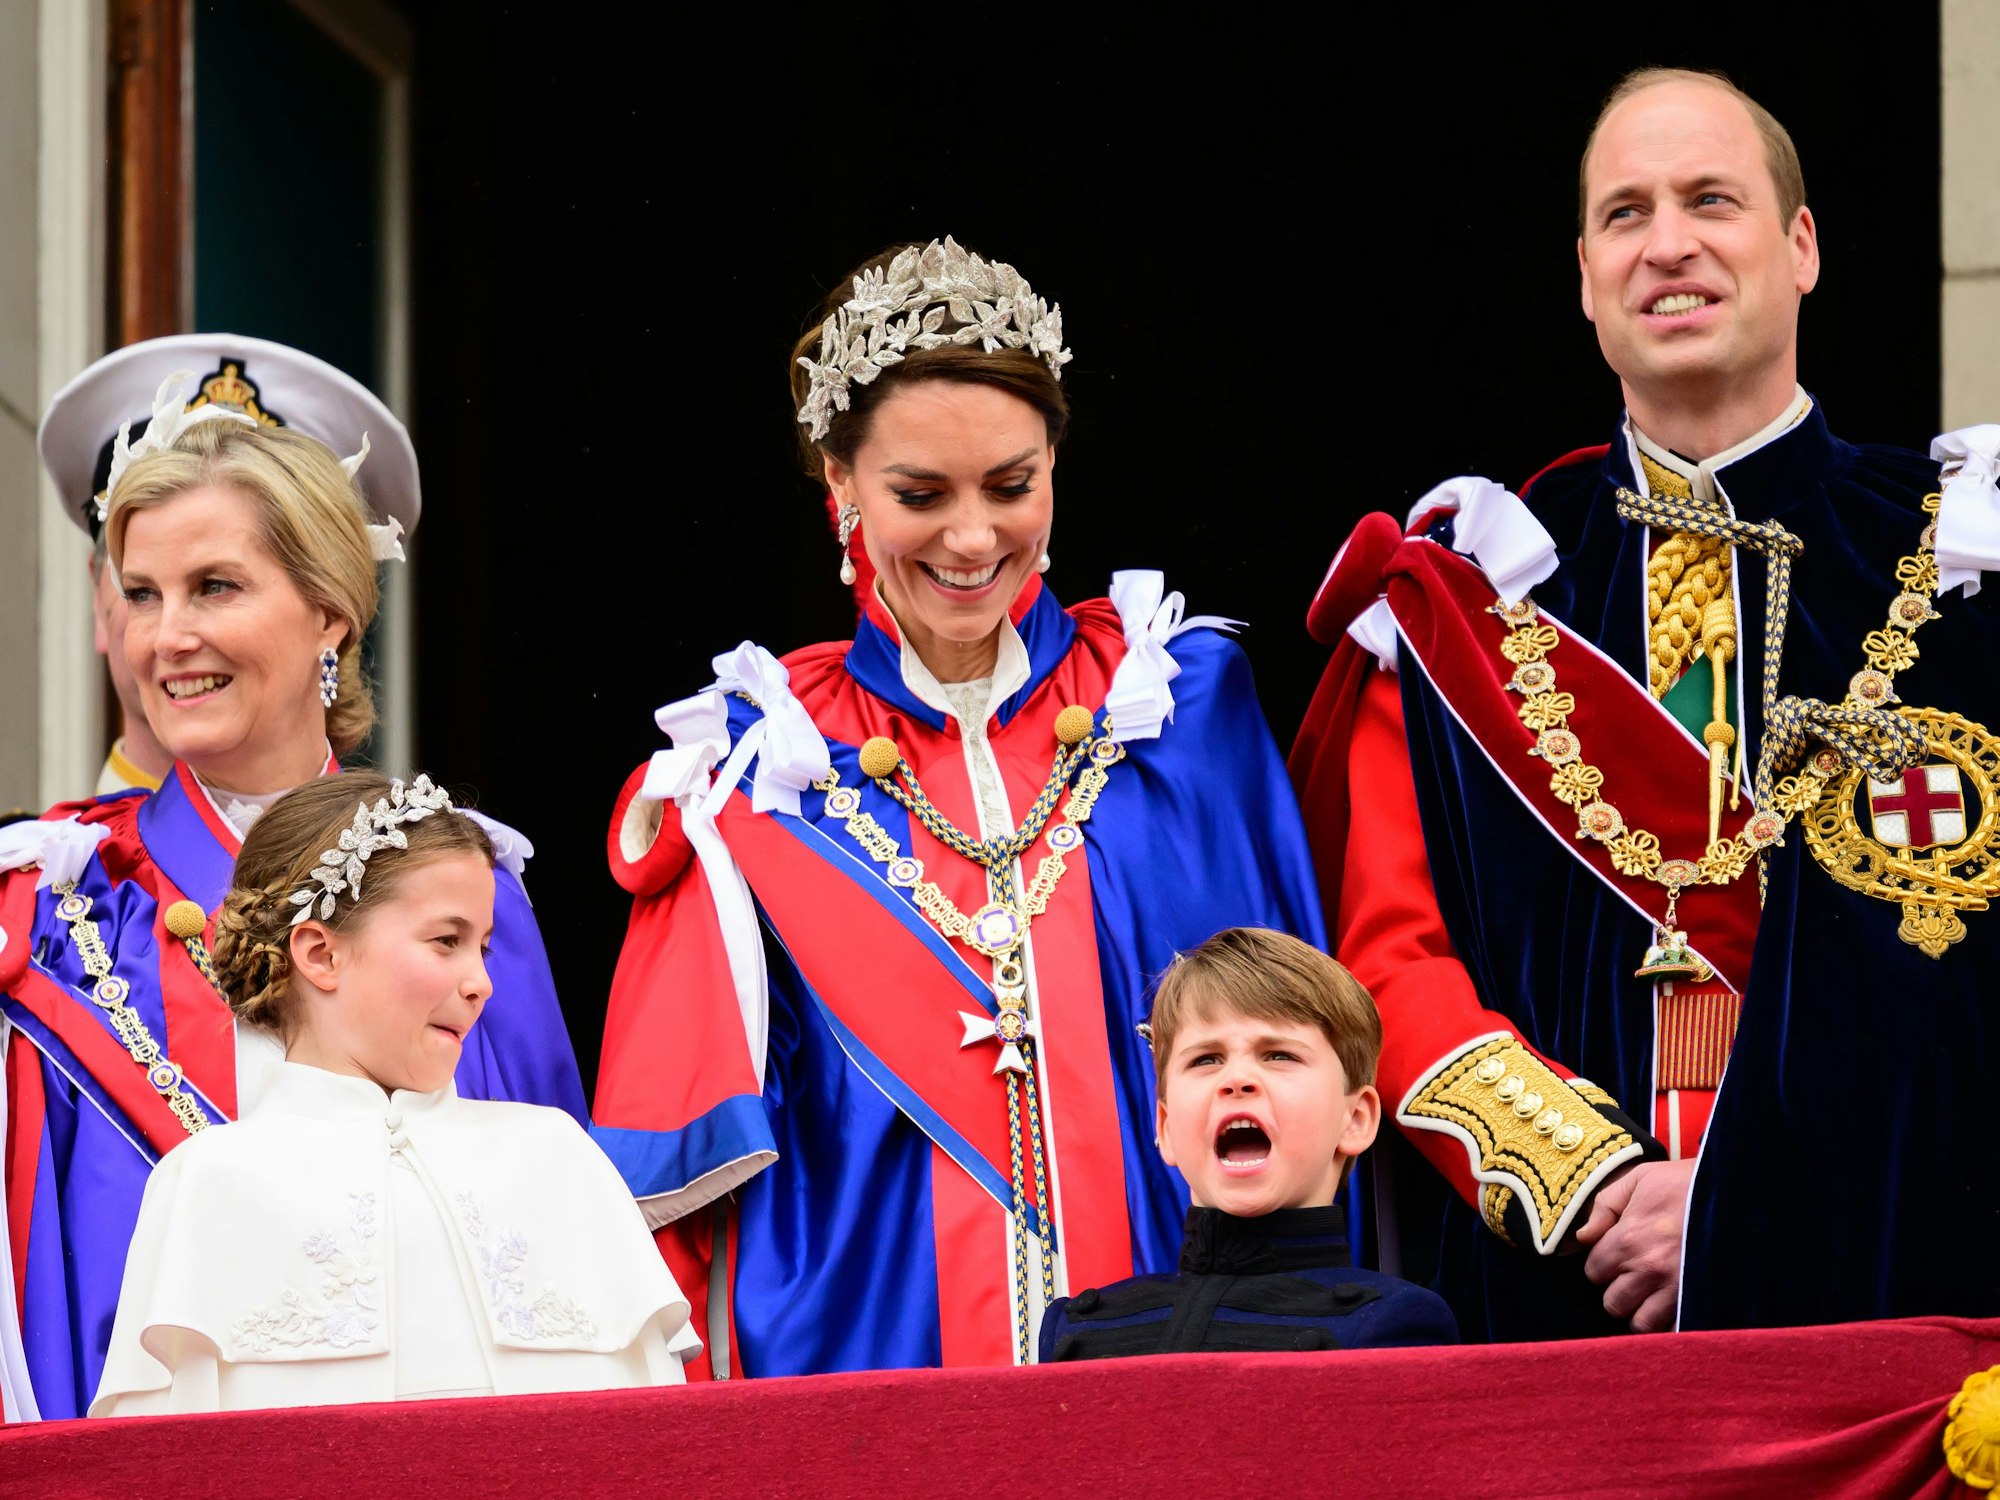 Sophie, Herzogin von Edinburgh, Prinzessin Charlotte, Prinz Louis, Catherine, Prinzessin von Wales und Prinz William, Prinz von Wales stehen auf dem Balkon des Buckingham Palastes während der Krönung von König Charles III. und Königin Camilla am 06. Mai 2023 in London, England.